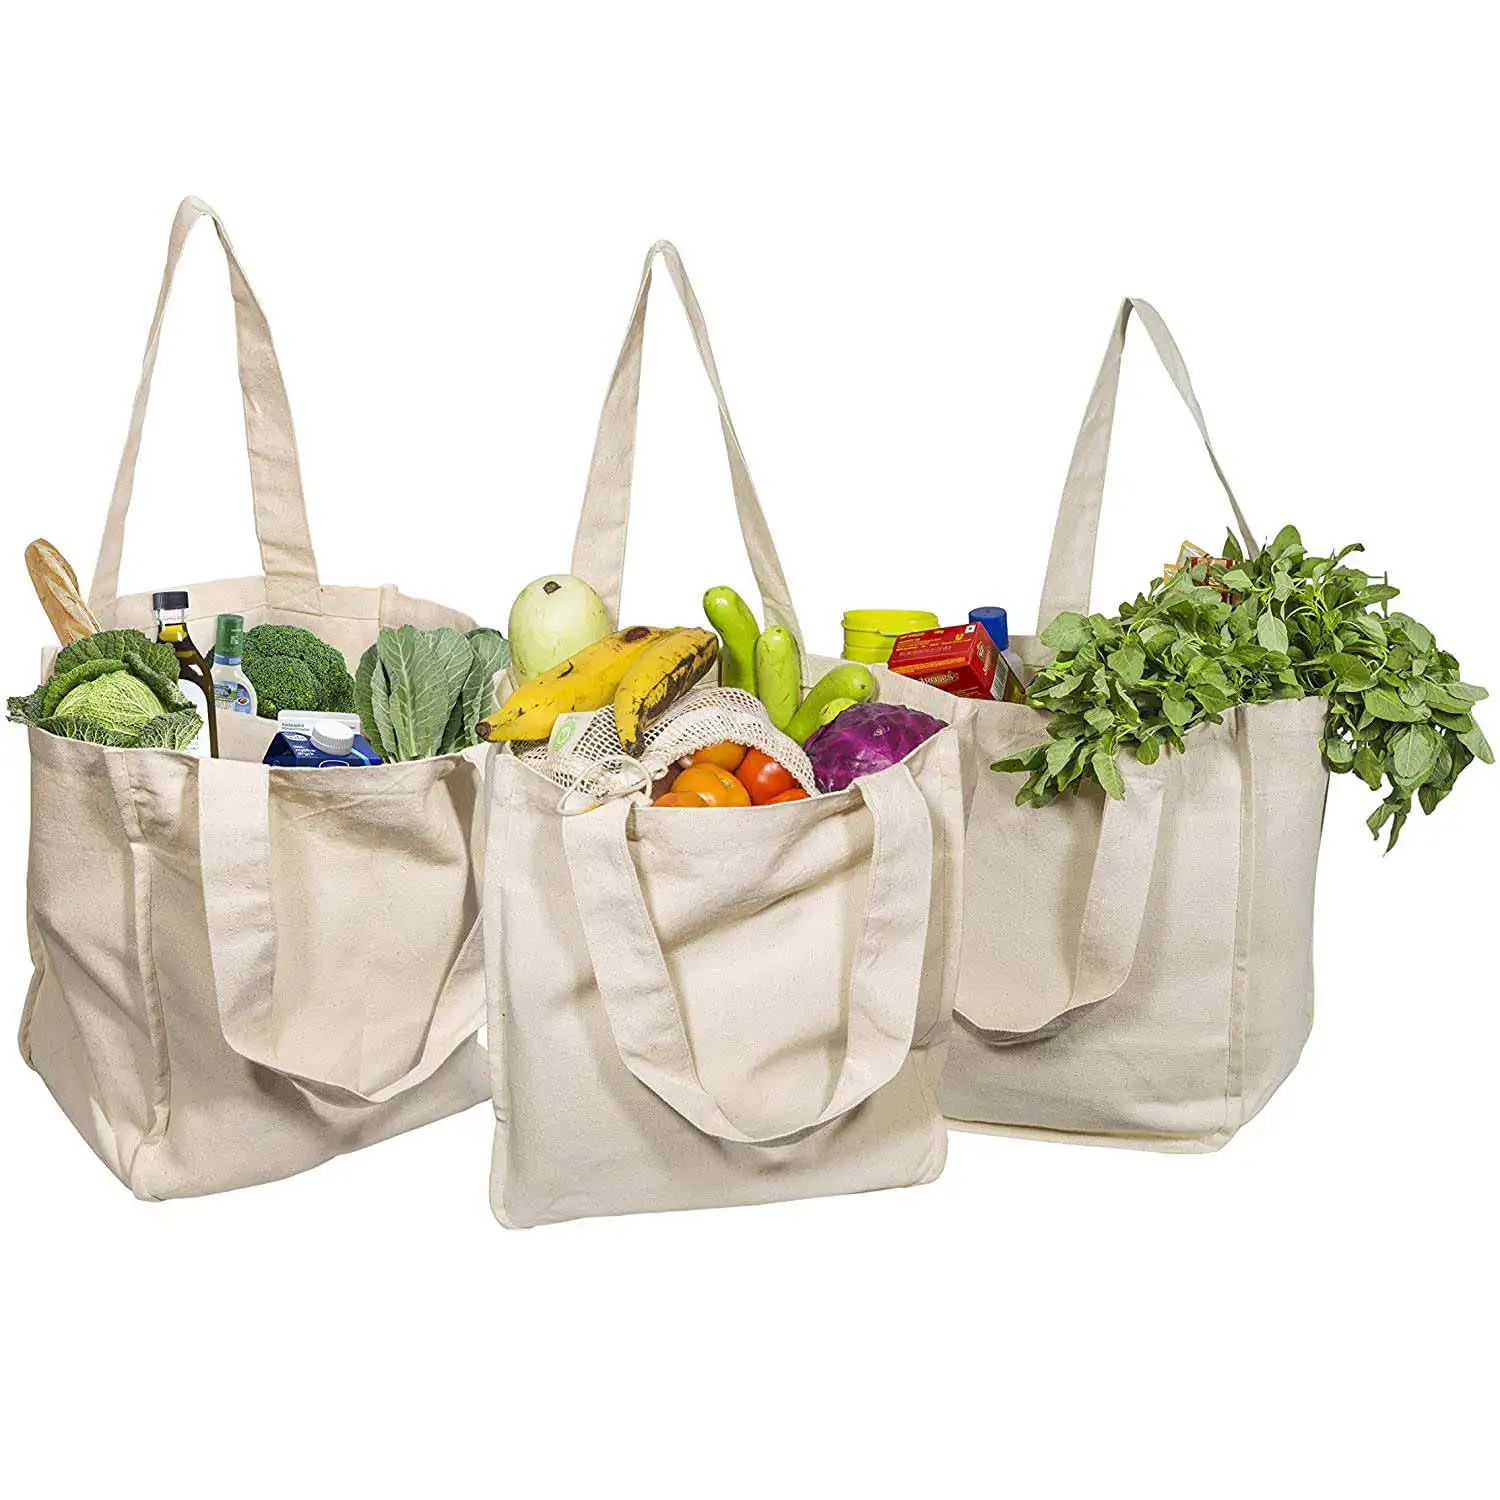 Fabrik heißer Verkauf faltbar Große Kapazität Supermarkt Gemüse Obst einkaufen große Leinwand Einkaufstasche